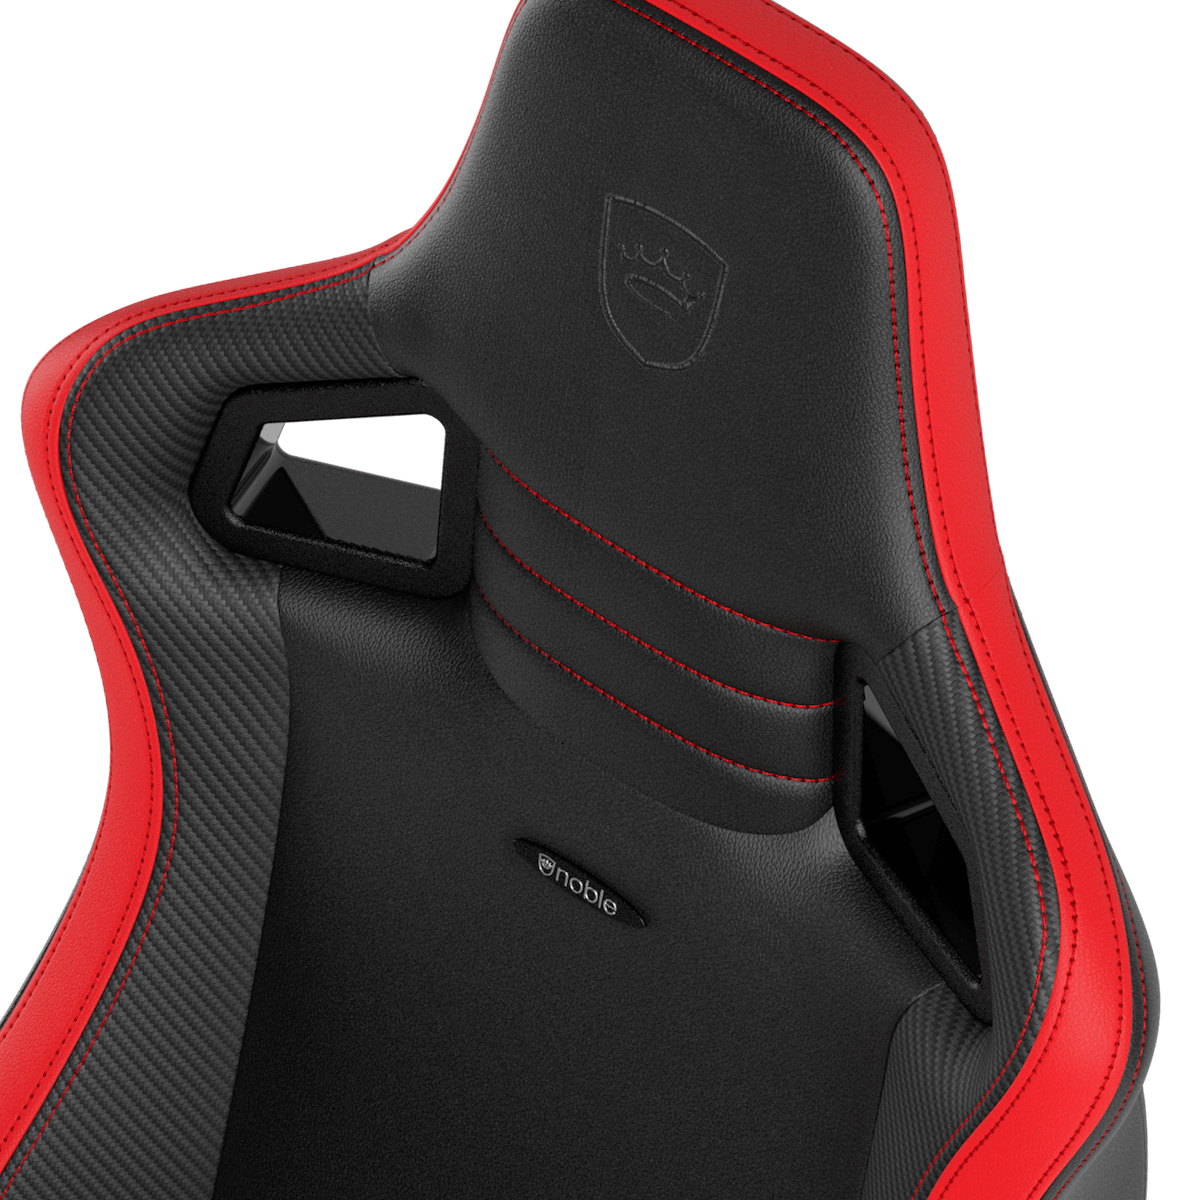 noblechairs - Cadeira noblechairs EPIC Compact - Preto /Carbono /Vermelho